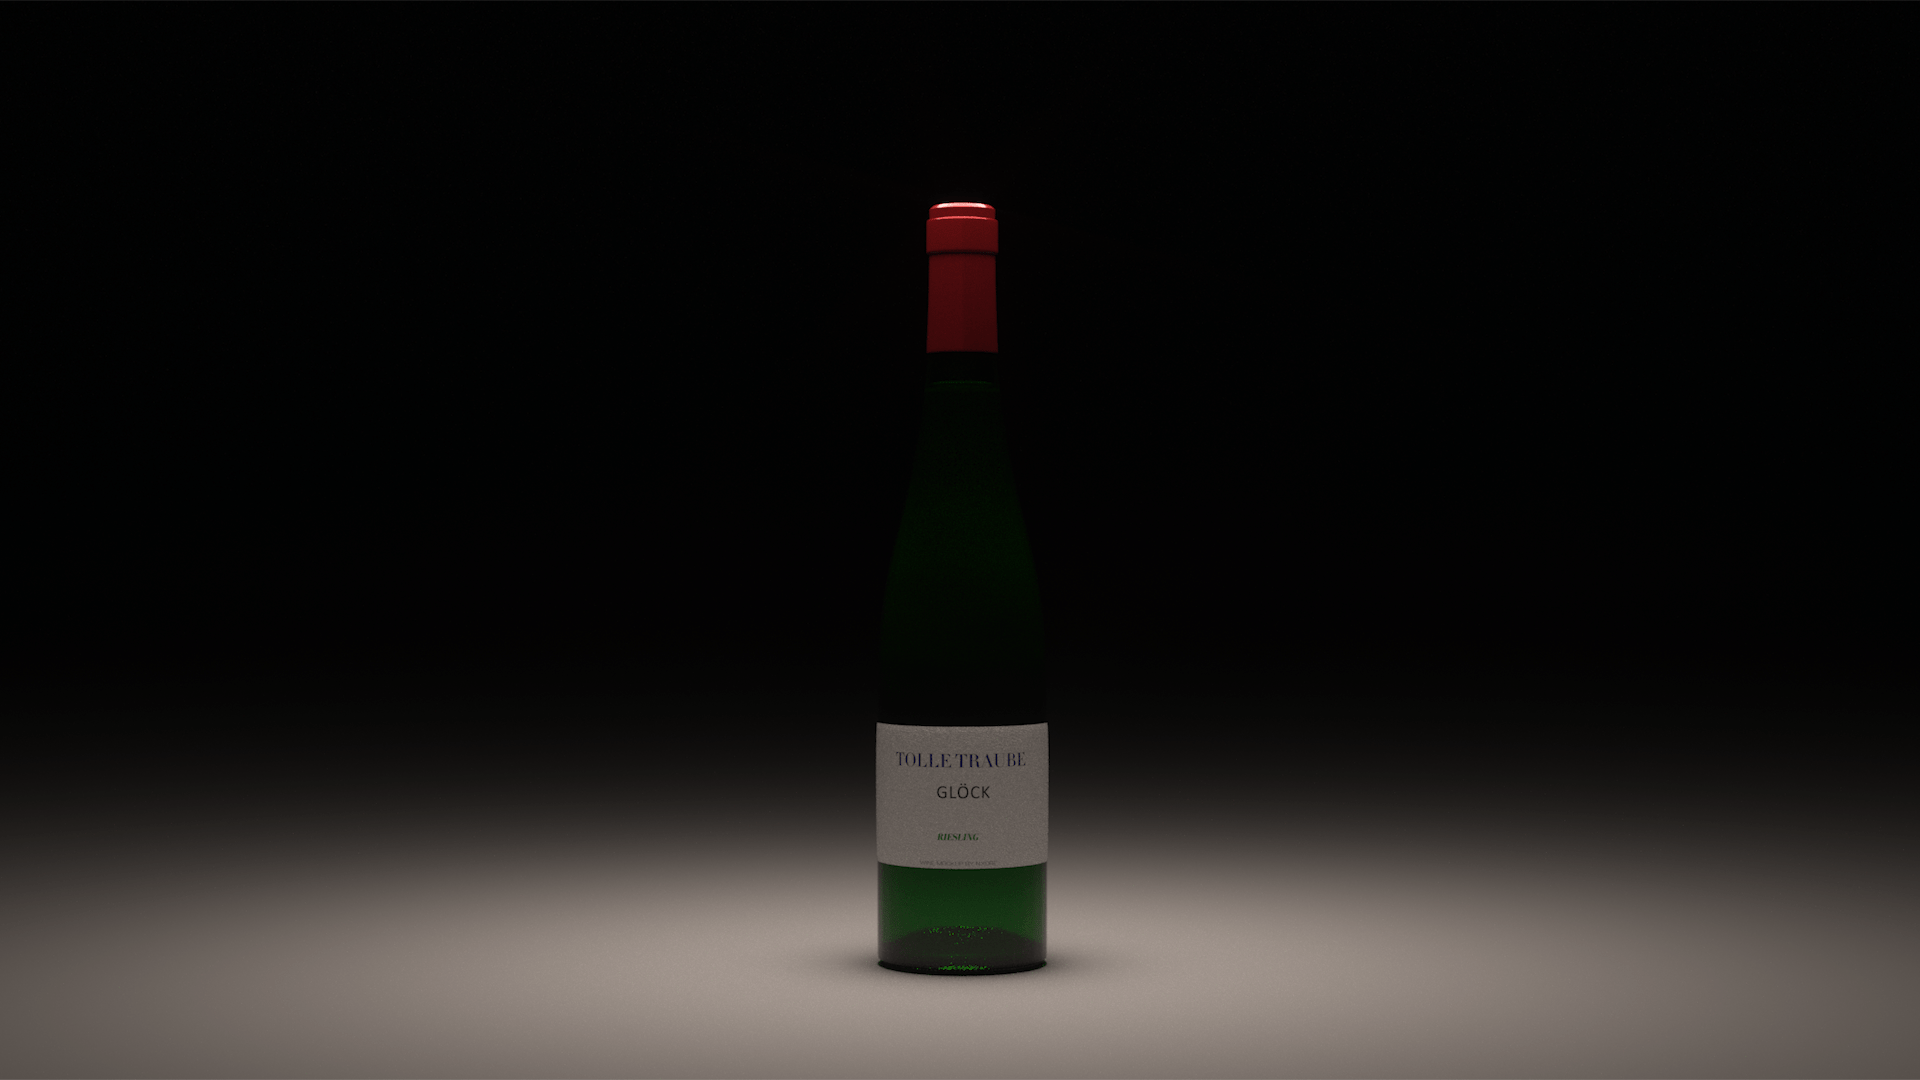 Computergeneriertes 3D-Produktfoto einer Weinflasche